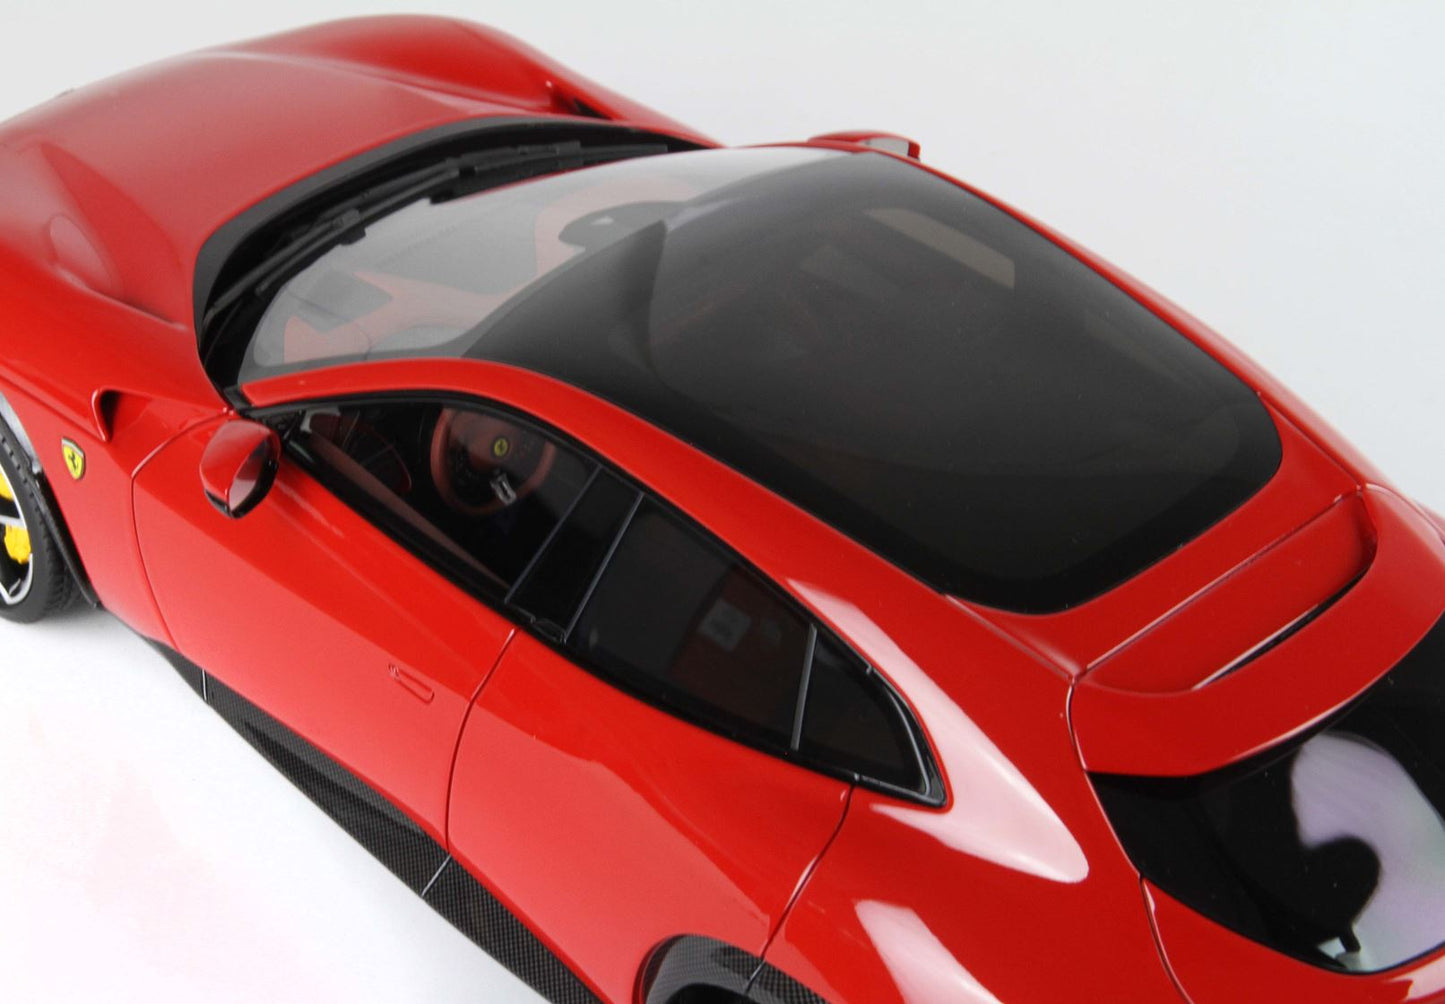 BBR-MODELS - 1/18 - Ferrari Purosangue - tetto panoramico Rosso Corsa 322 con Vetrinetta